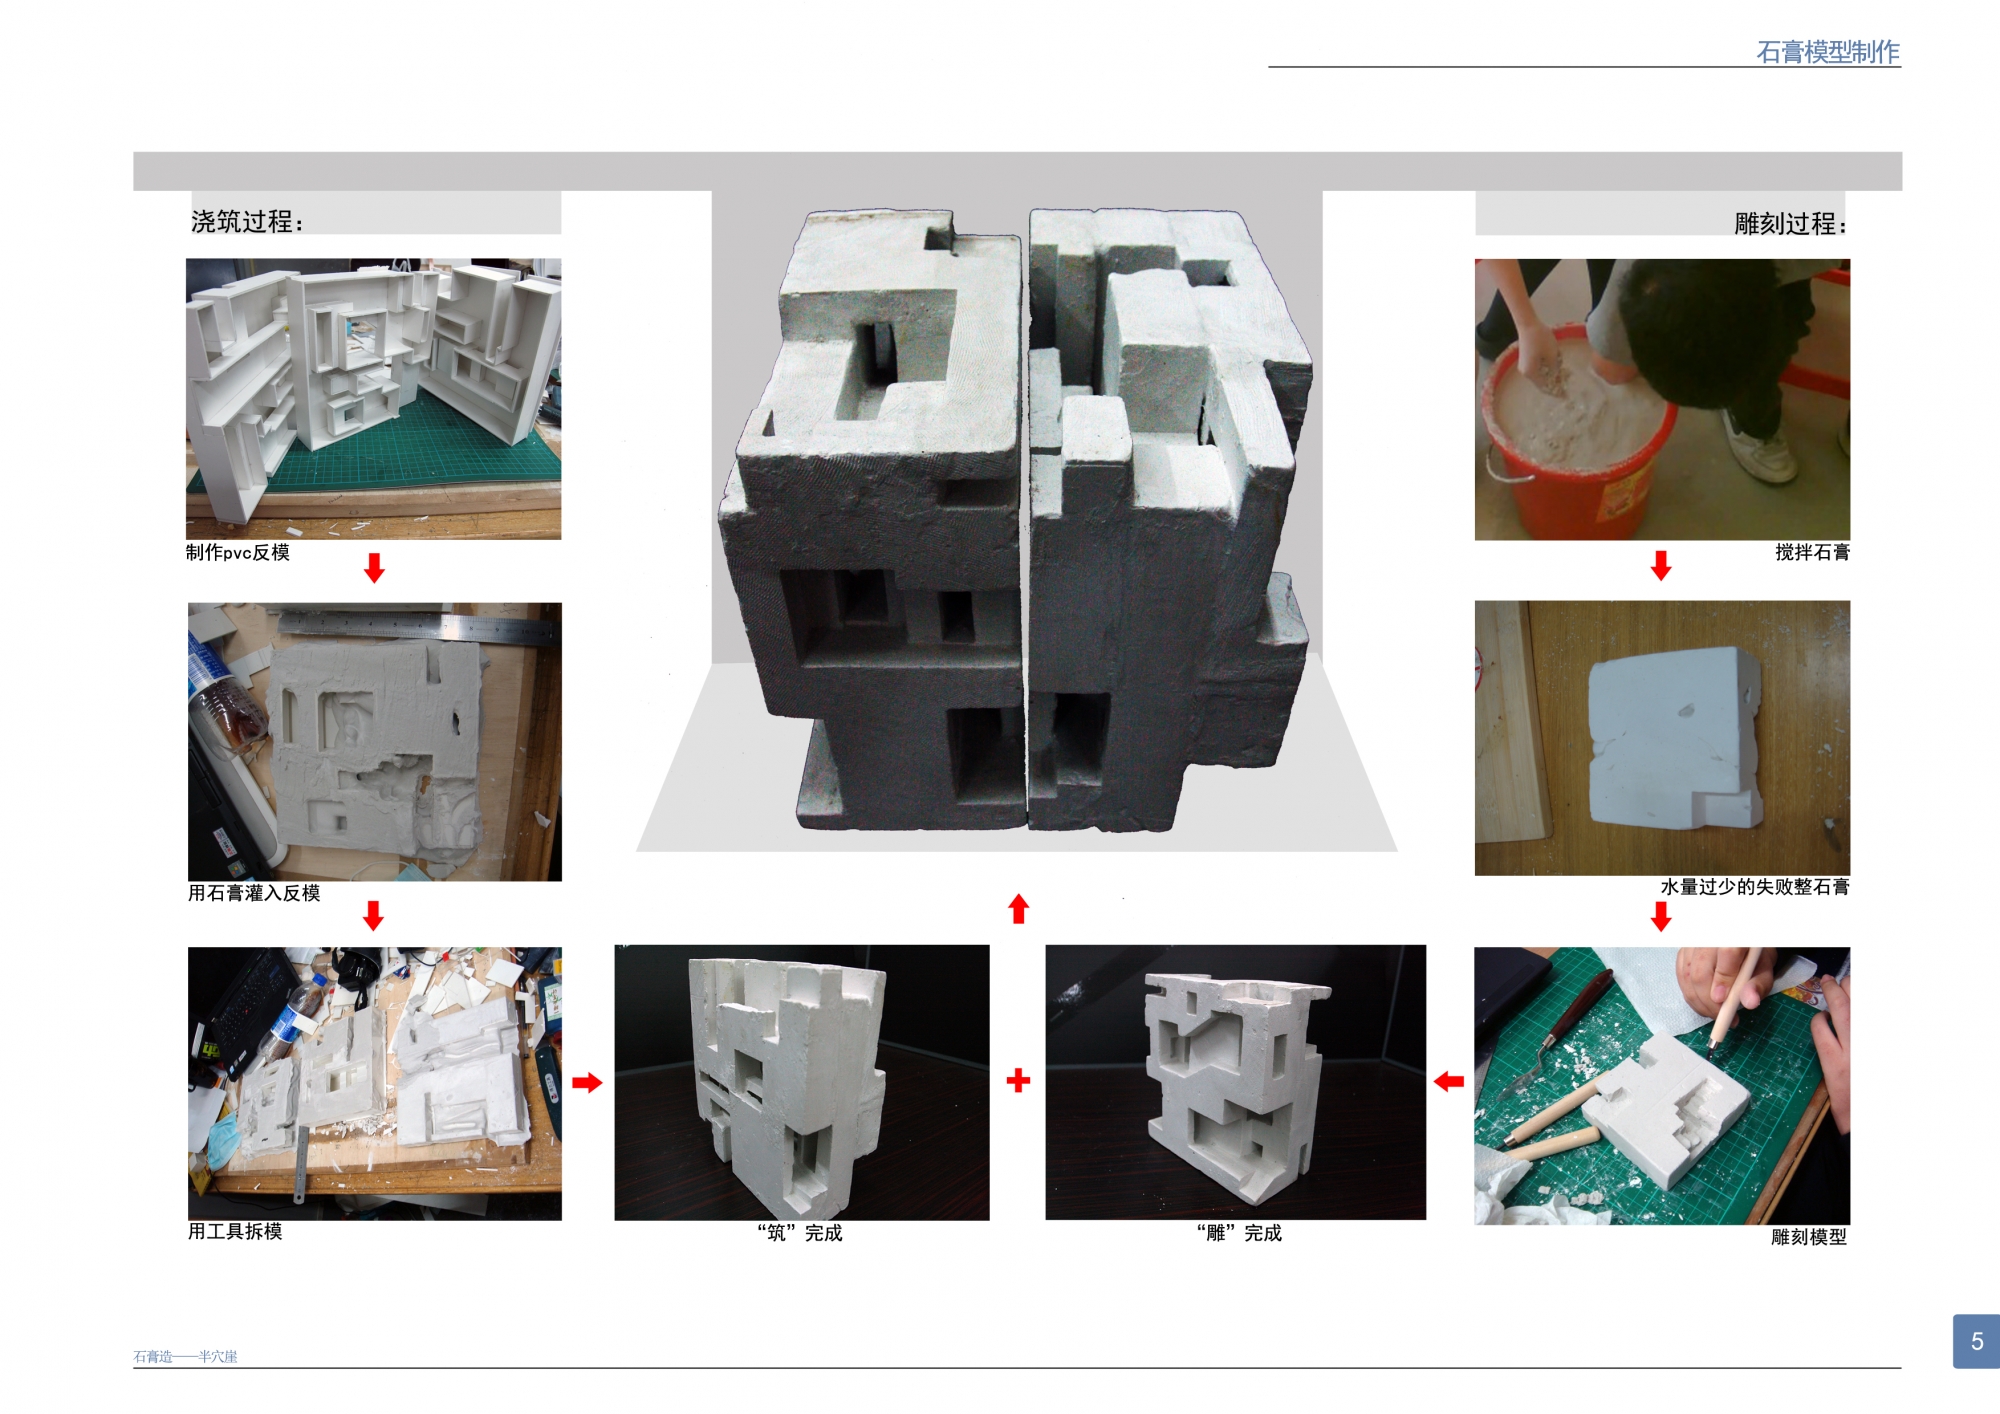 石膏模型制作实验报告图片